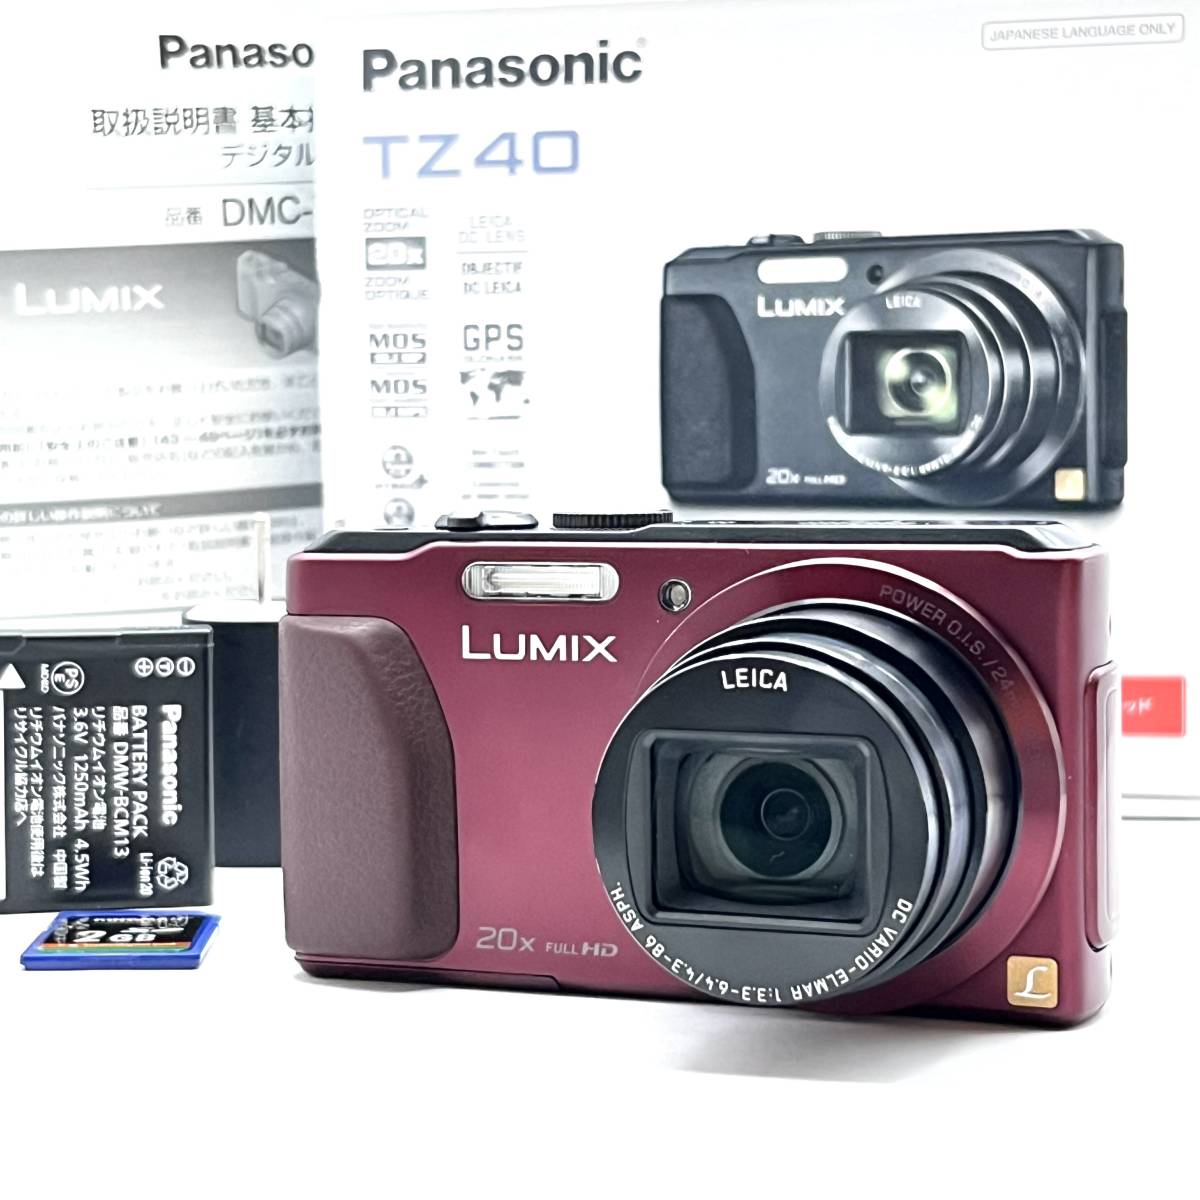 ★美品★パナソニック Panasonic LUMIX DMC-TZ40 デジタルカメラ★ T1000#1688